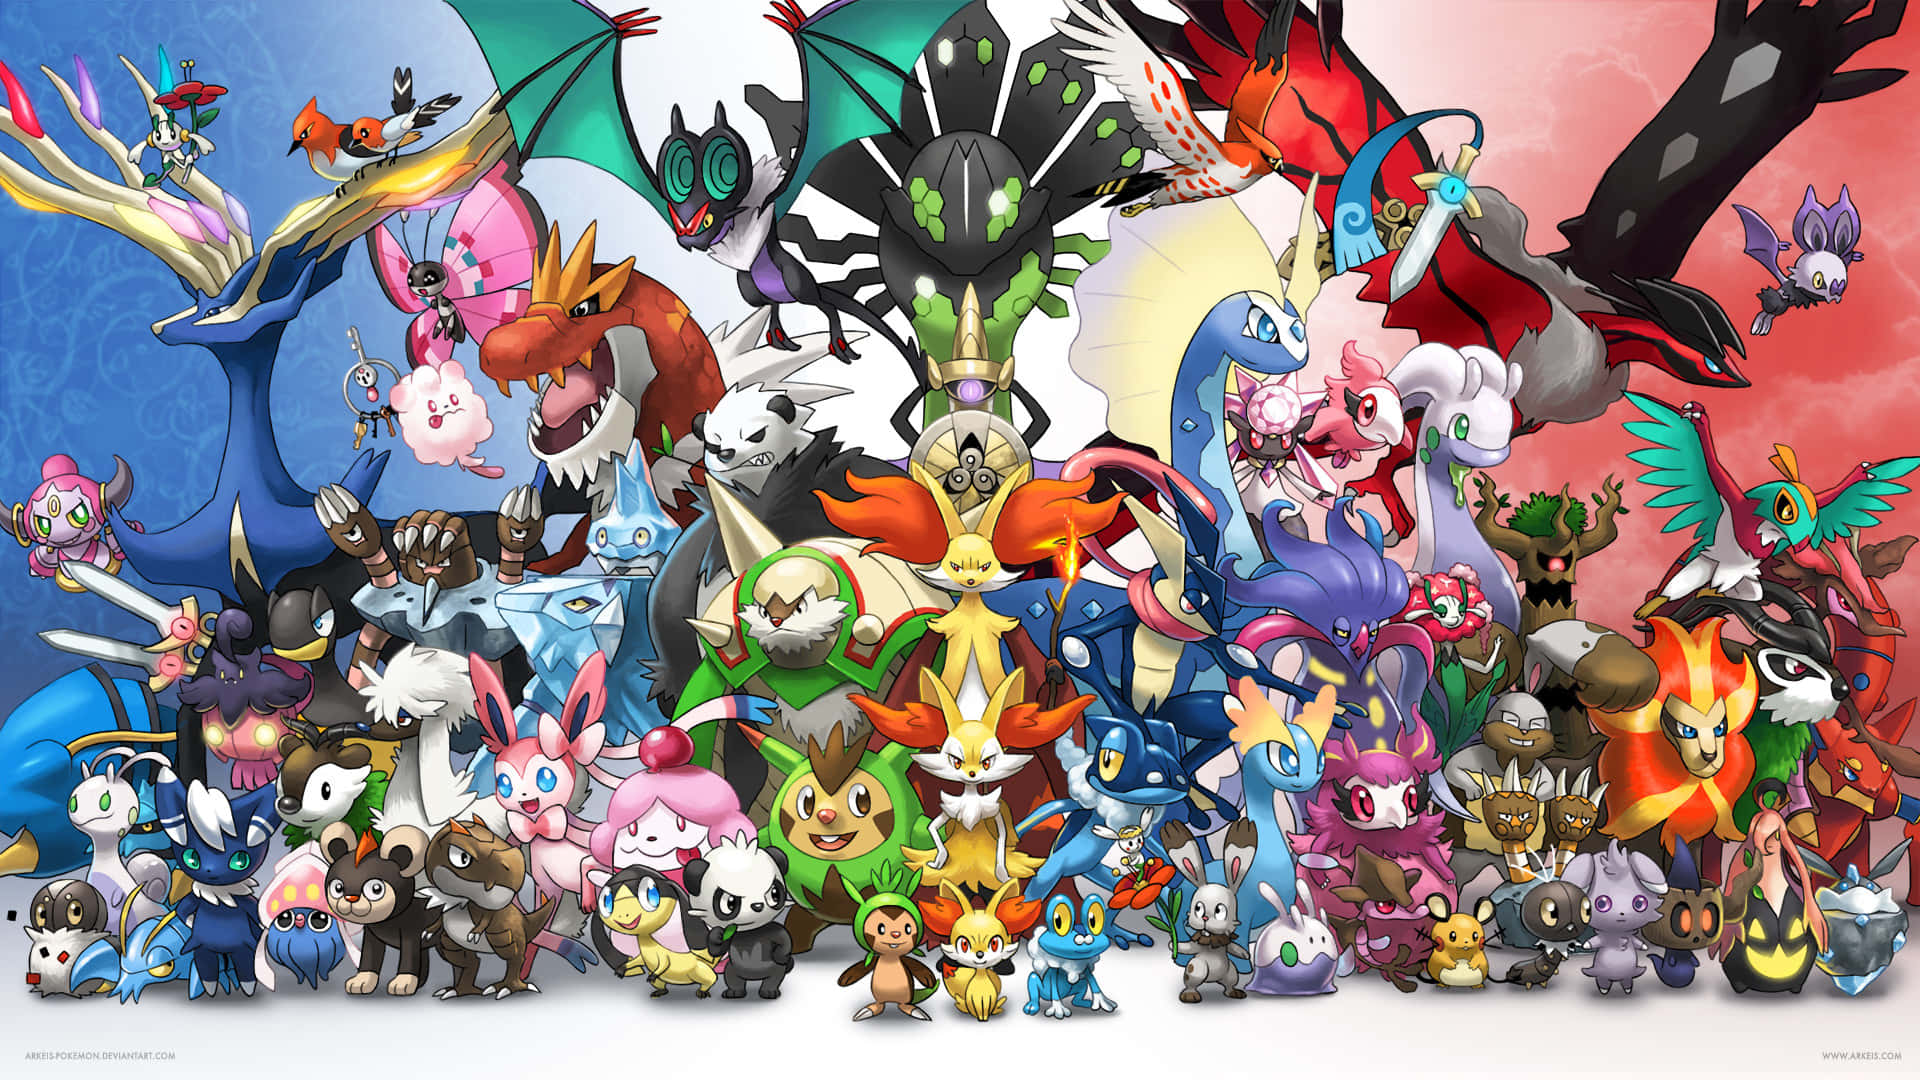 Tuttii Pokémon Si Uniscono!